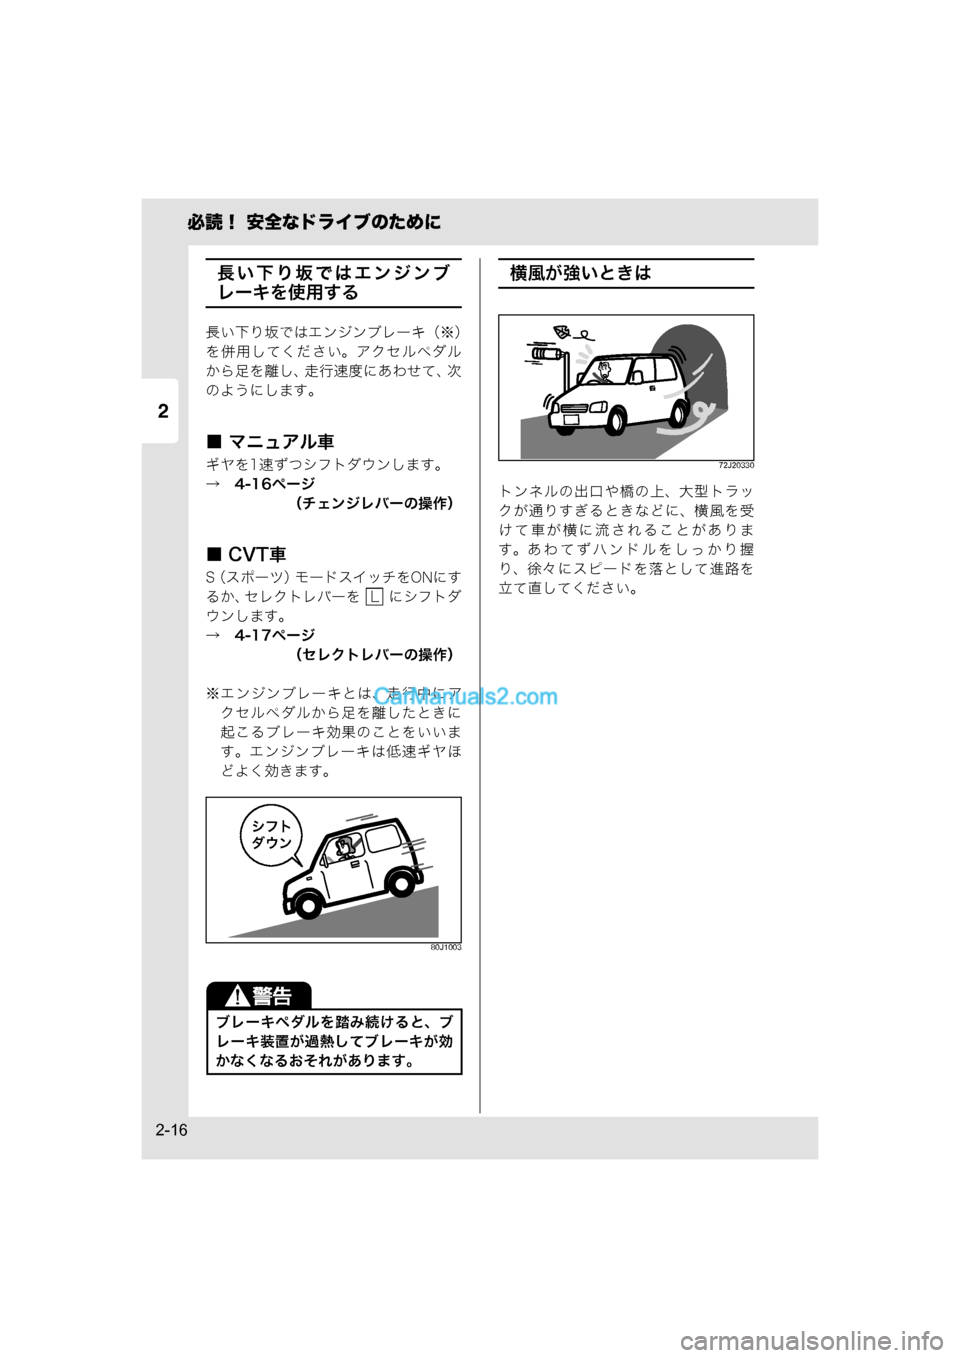 MAZDA MODEL CARROL 2015  取扱説明書 (キャロル) (in Japanese) 2
必読！ 安全なドライブのために
2-16
長い下り坂ではエンジンブ
レーキを使用する
長い下り坂ではエンジンブレーキ（※）
を併用してください。�